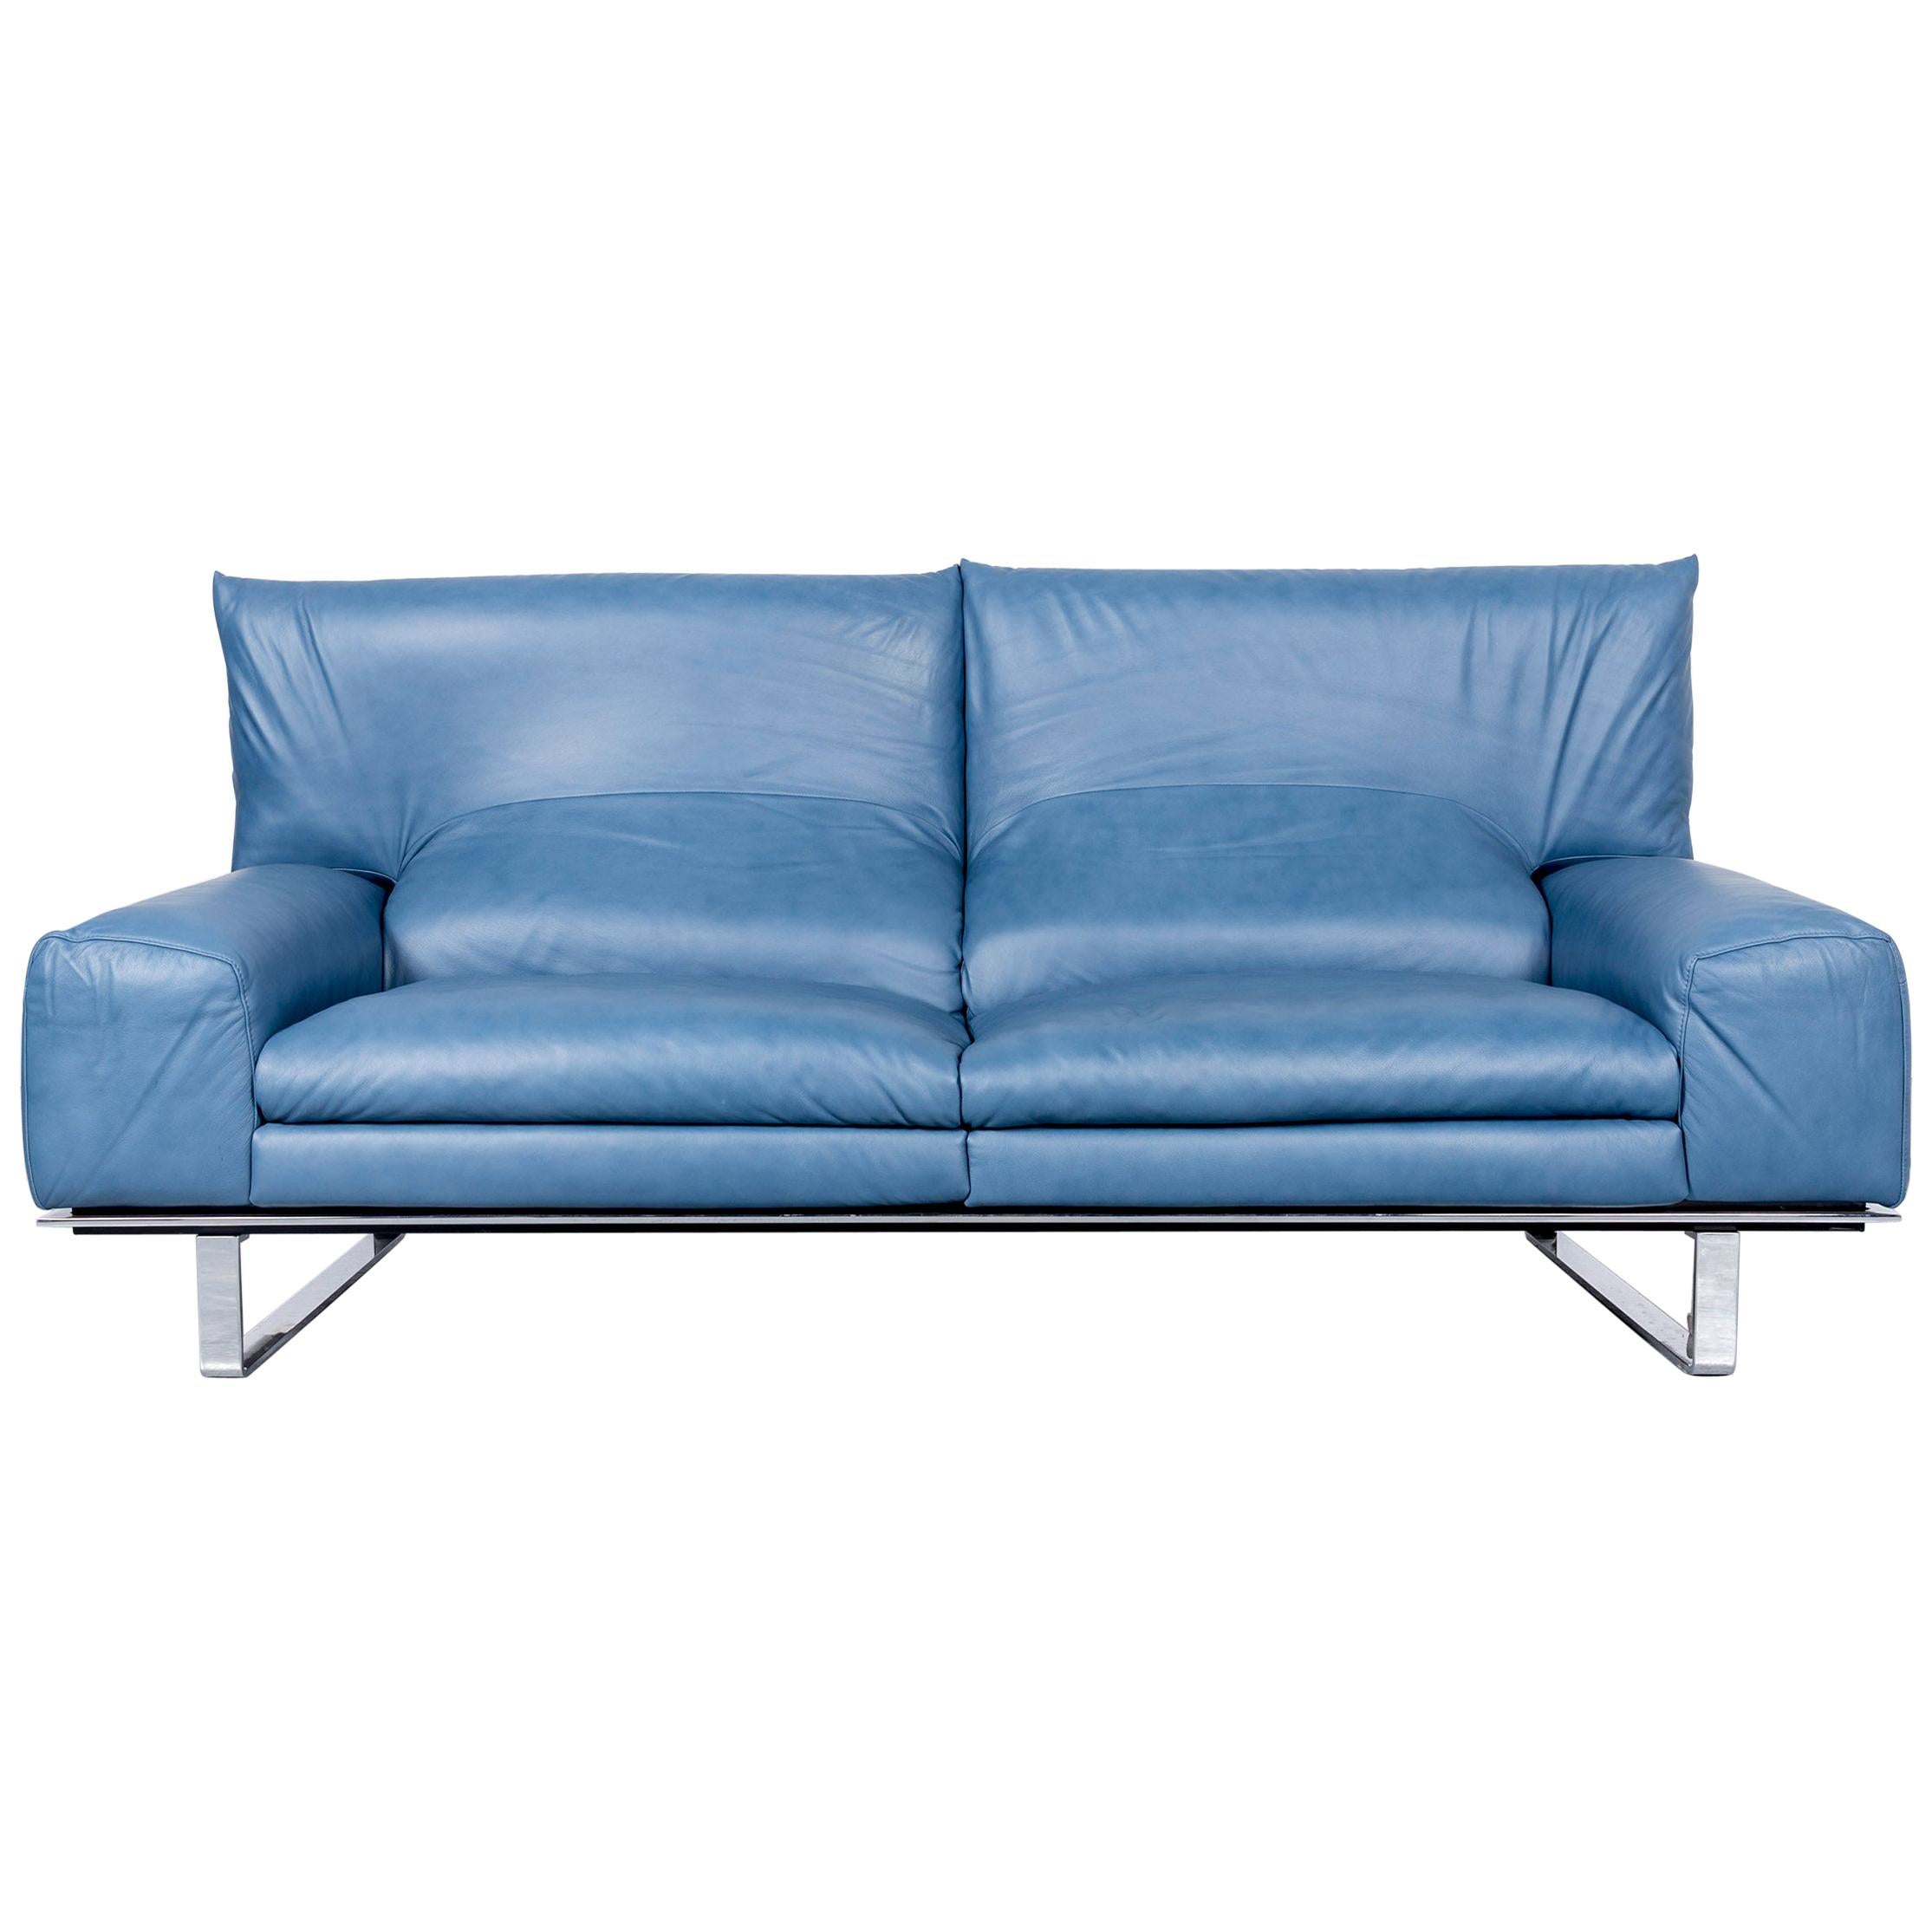 Ewald Schillig Designer Sofa Leather Blue Three-Seat Couch Modern